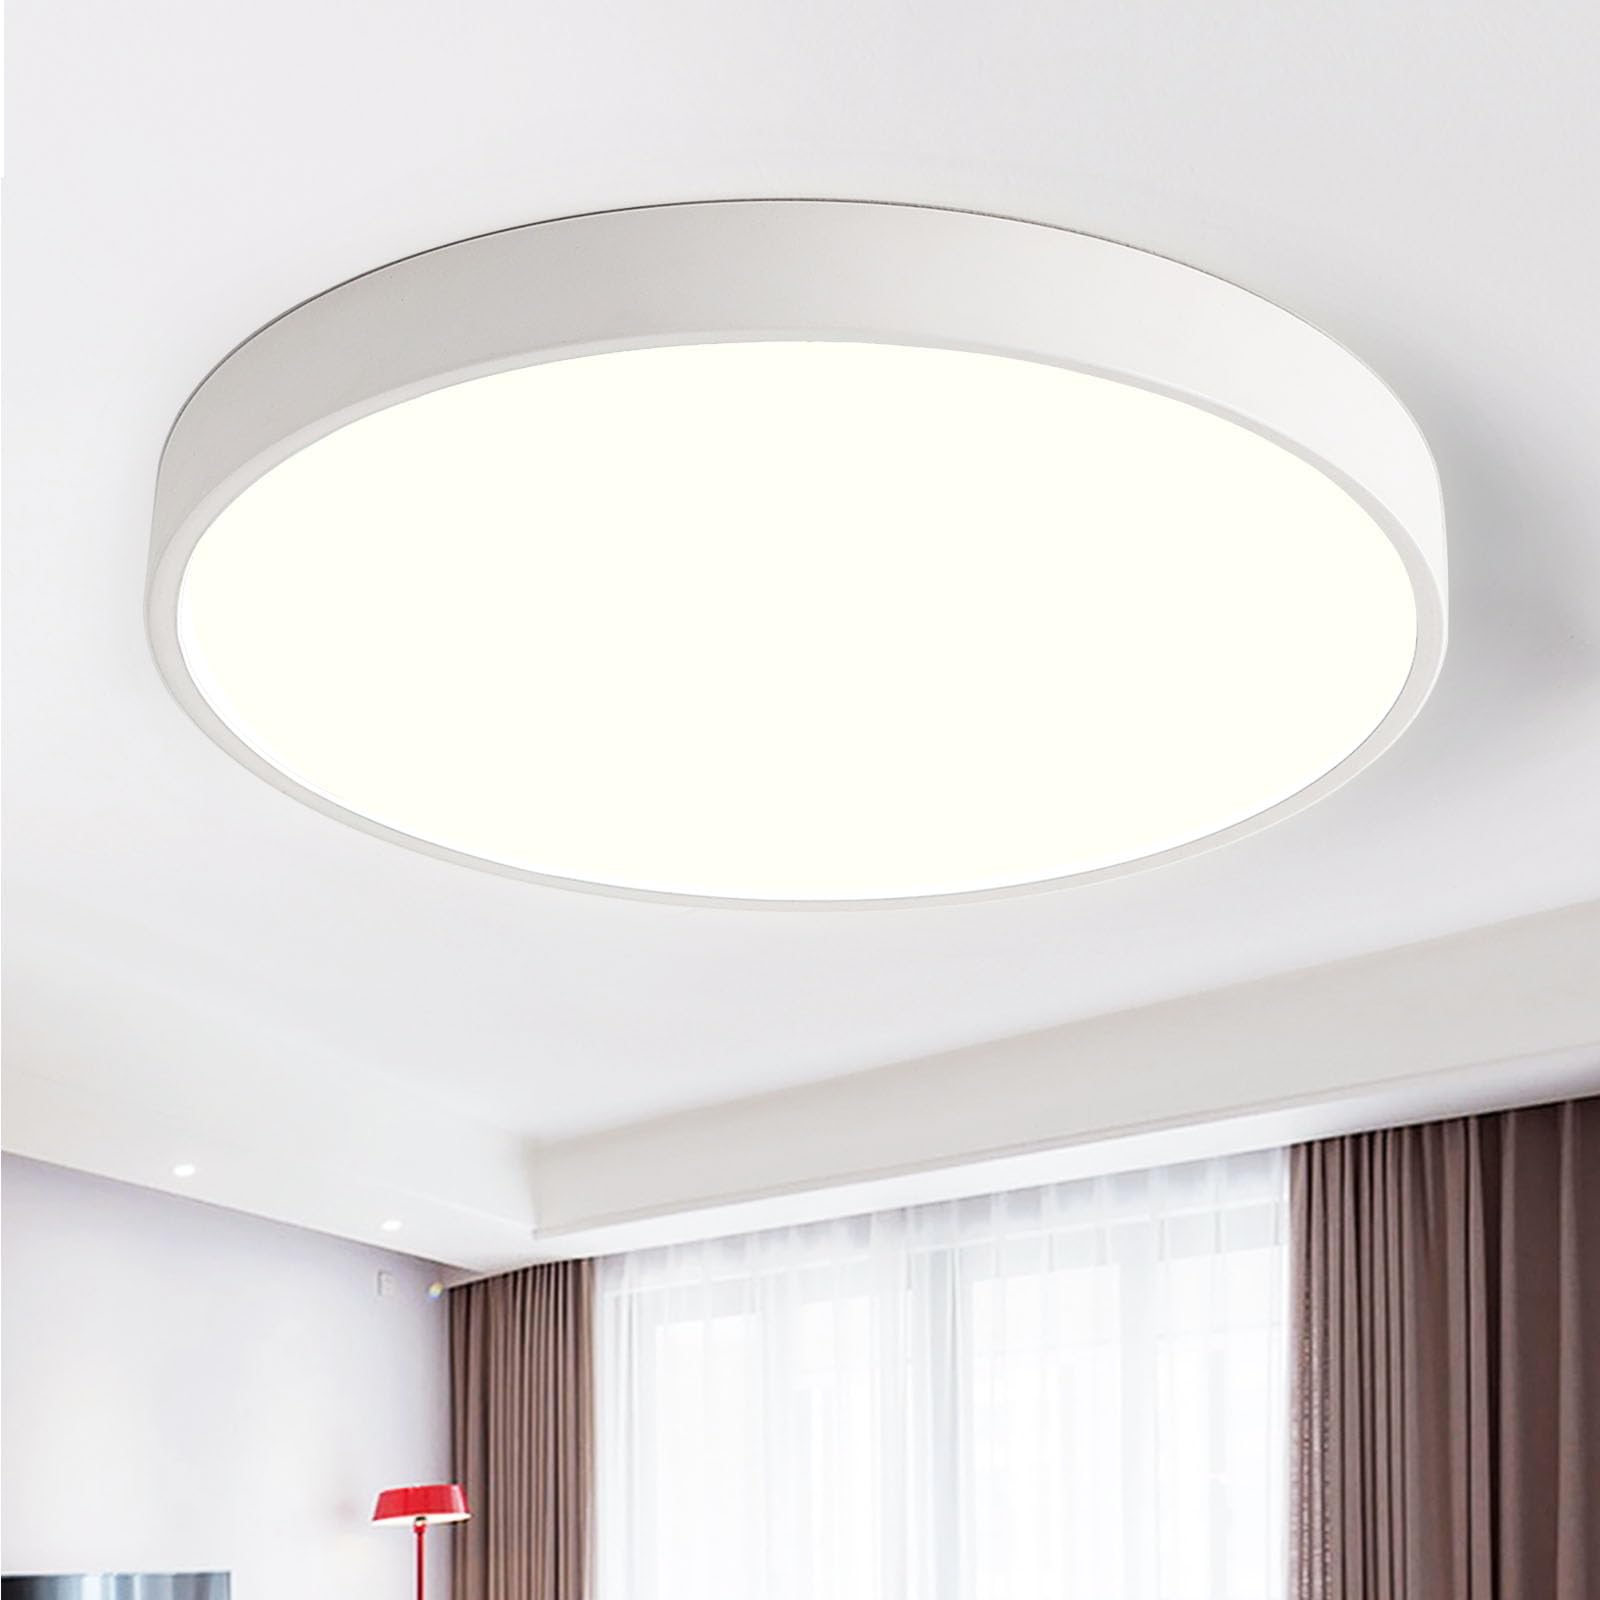 Style home 48W Deckenleuchte LED Deckenlampe Ø50x4cm,Warmweiß 3000K,ultraslim runde Lampe aus Metall, für Wohnzimmer Schlafzimmer Büro Küche Diele Flur (Weiß)